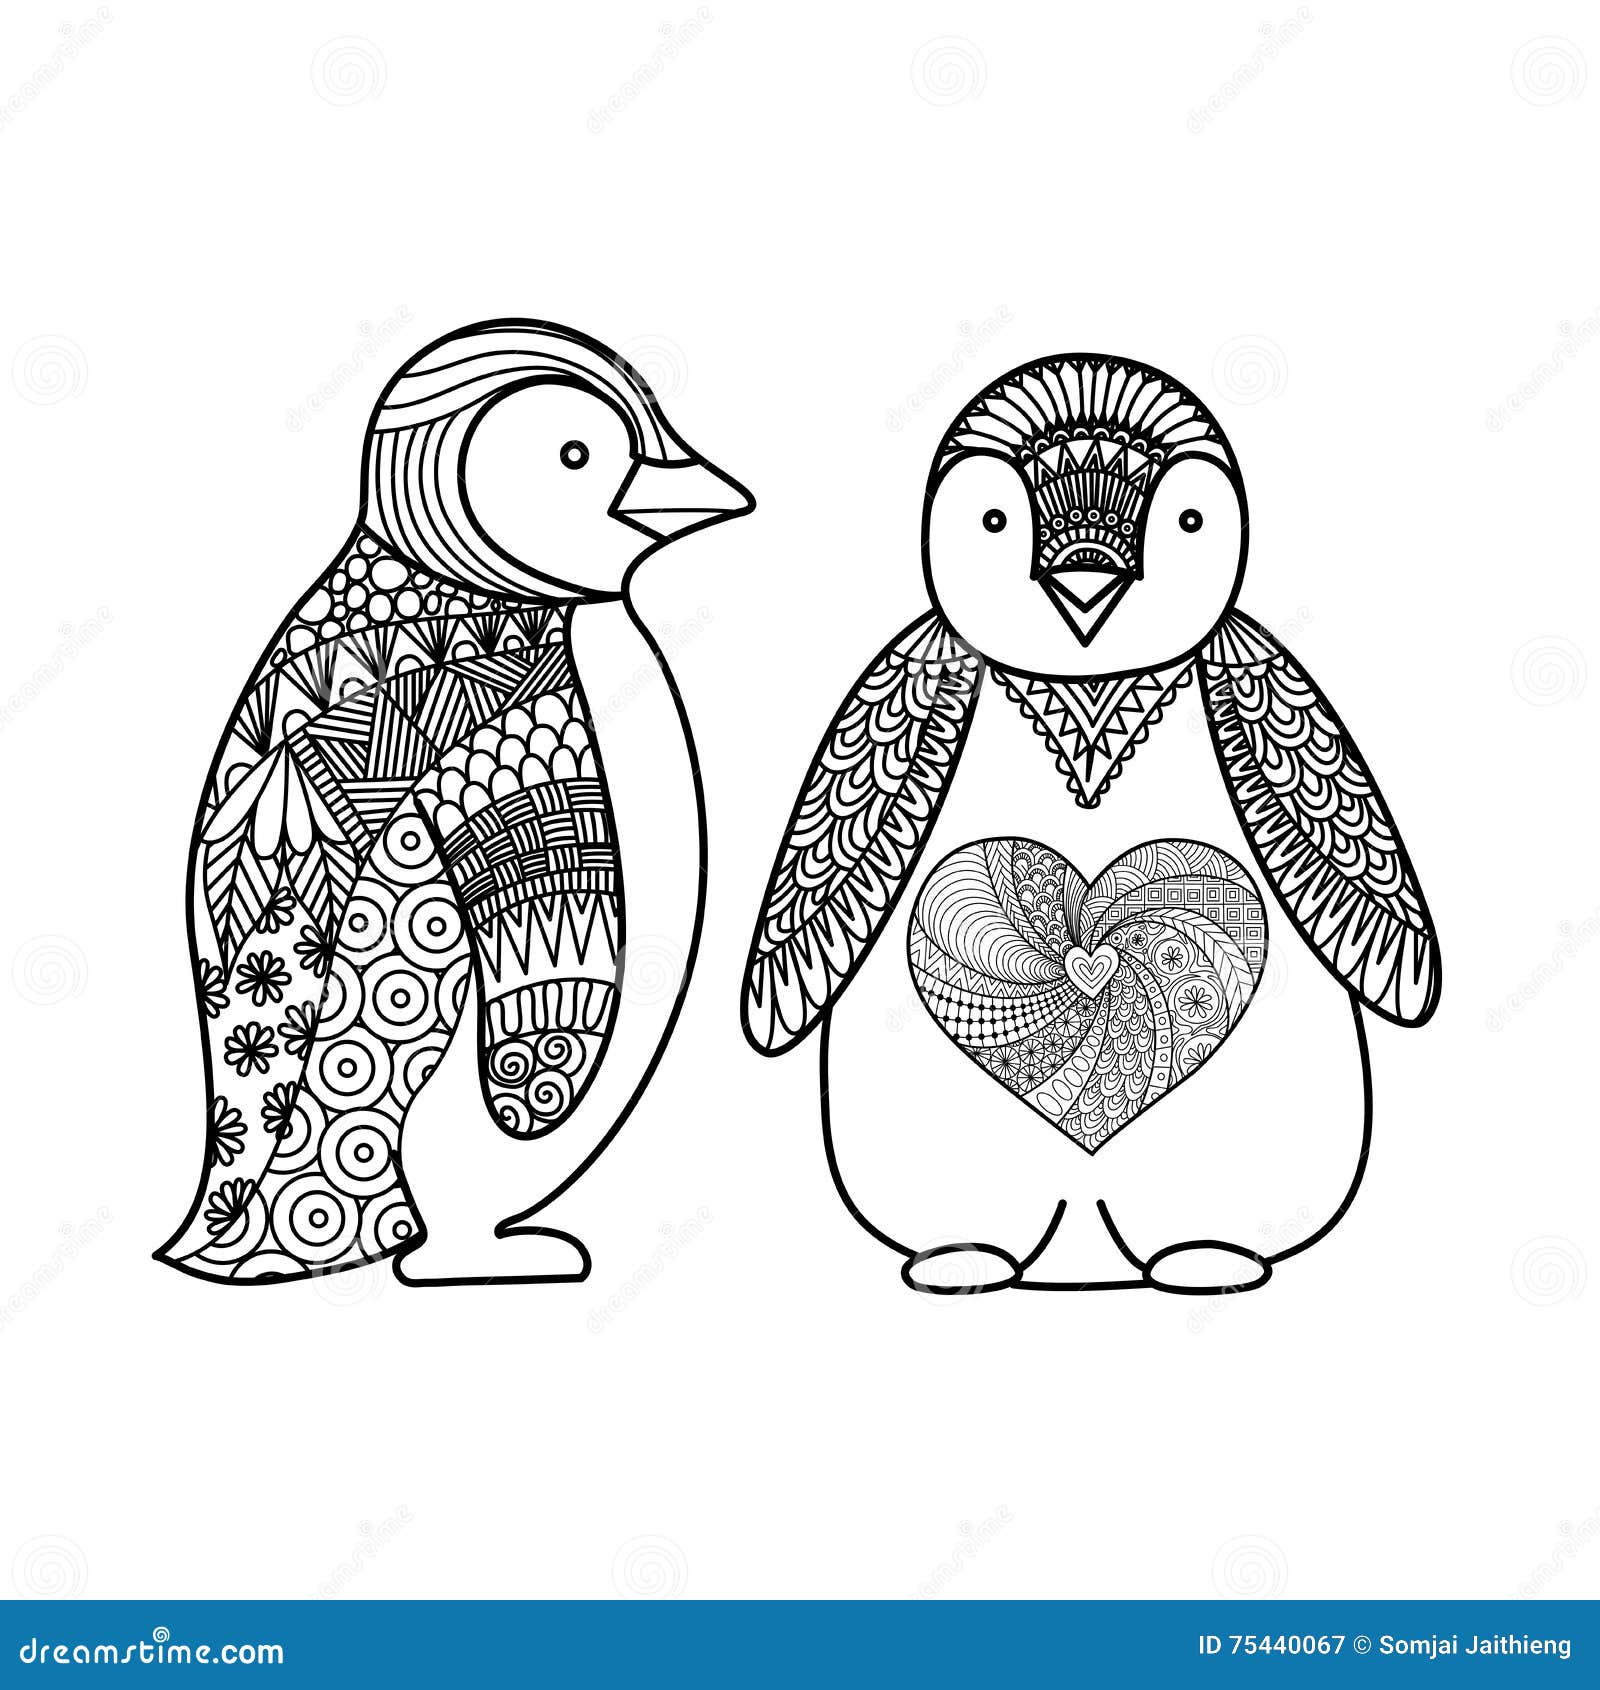 Δύο penguins doodle σχεδιάζουν για το χρωματισμό του βιβλίου για τον ενήλικο, το σχέδιο μπλουζών και άλλες διακοσμήσεις